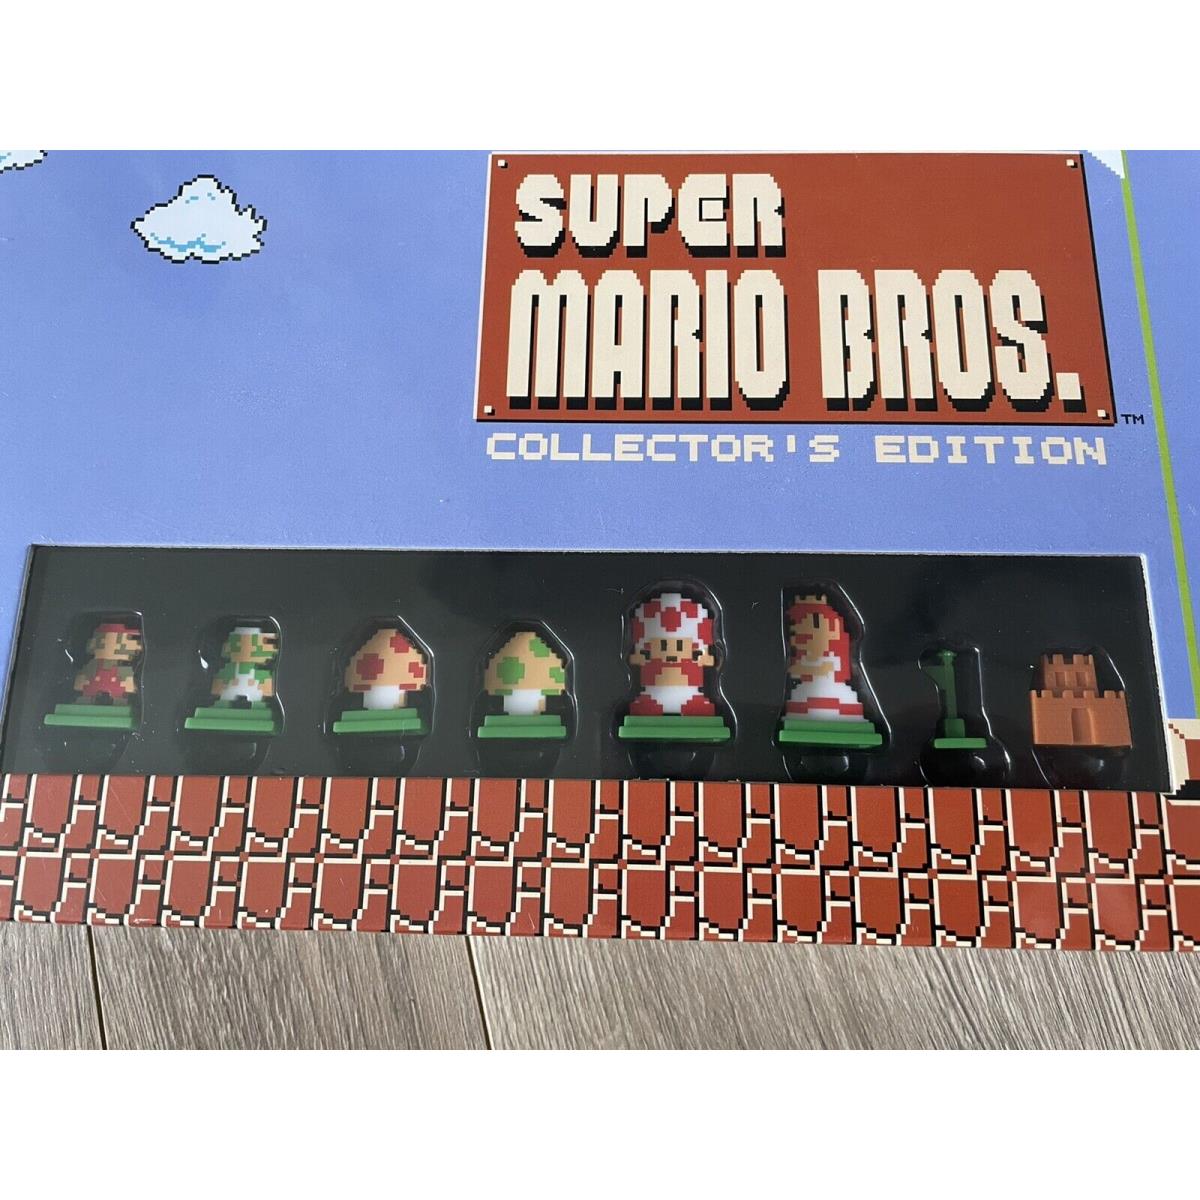 Monopoly Super Mario Bros. Collector`s Edition 2017 Hasbro